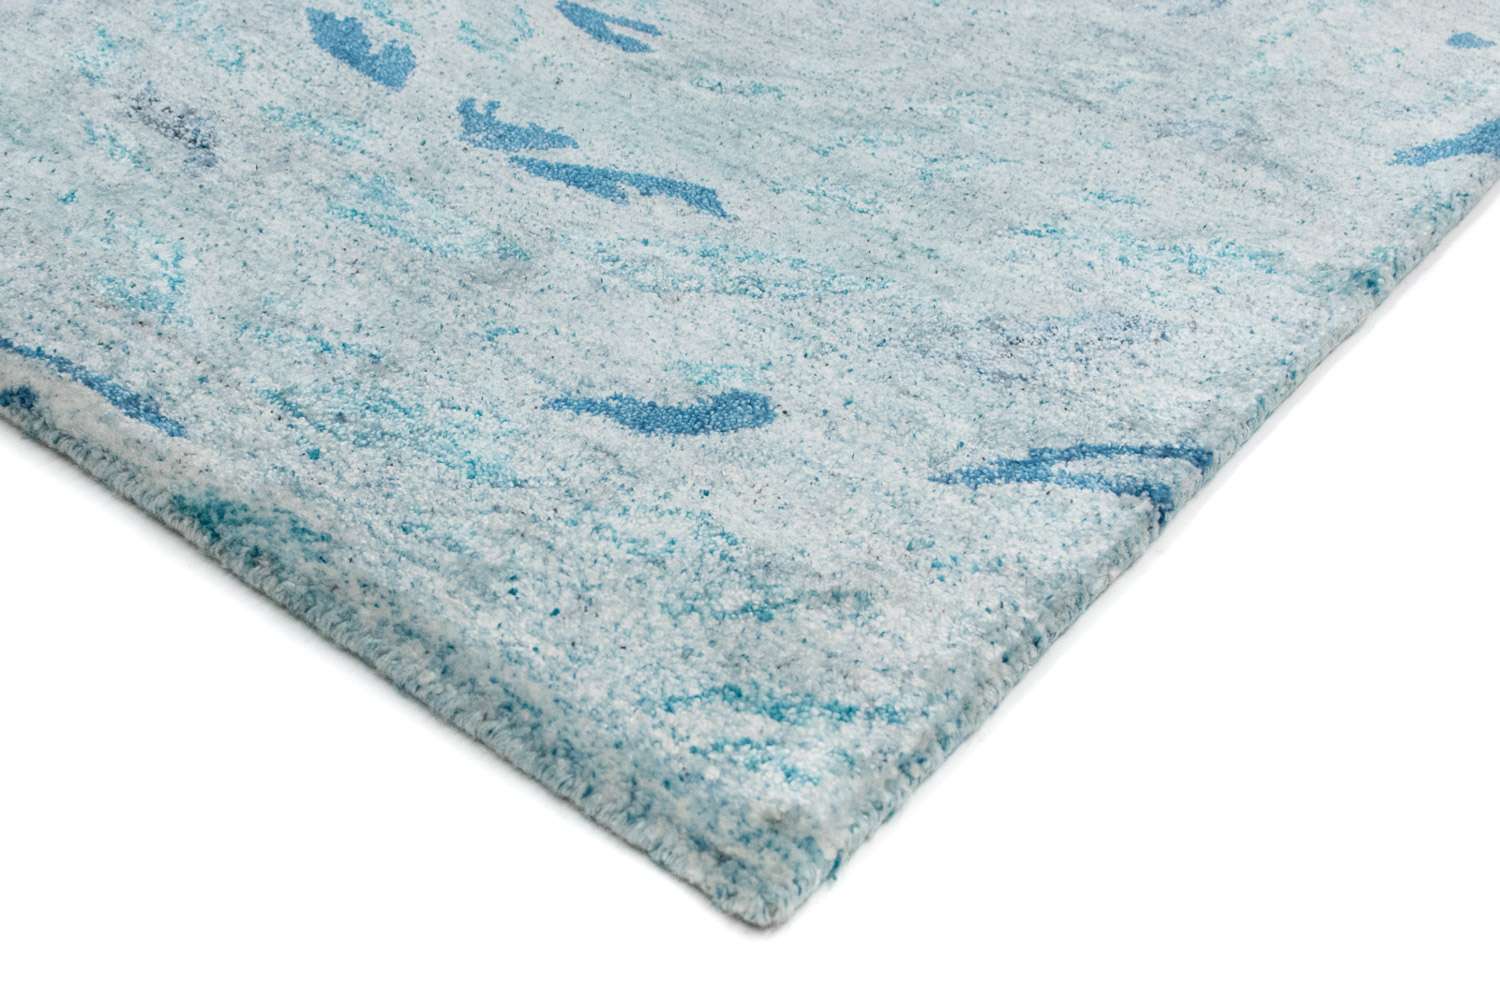 Designový koberec - 140 x 70 cm - tyrkysová